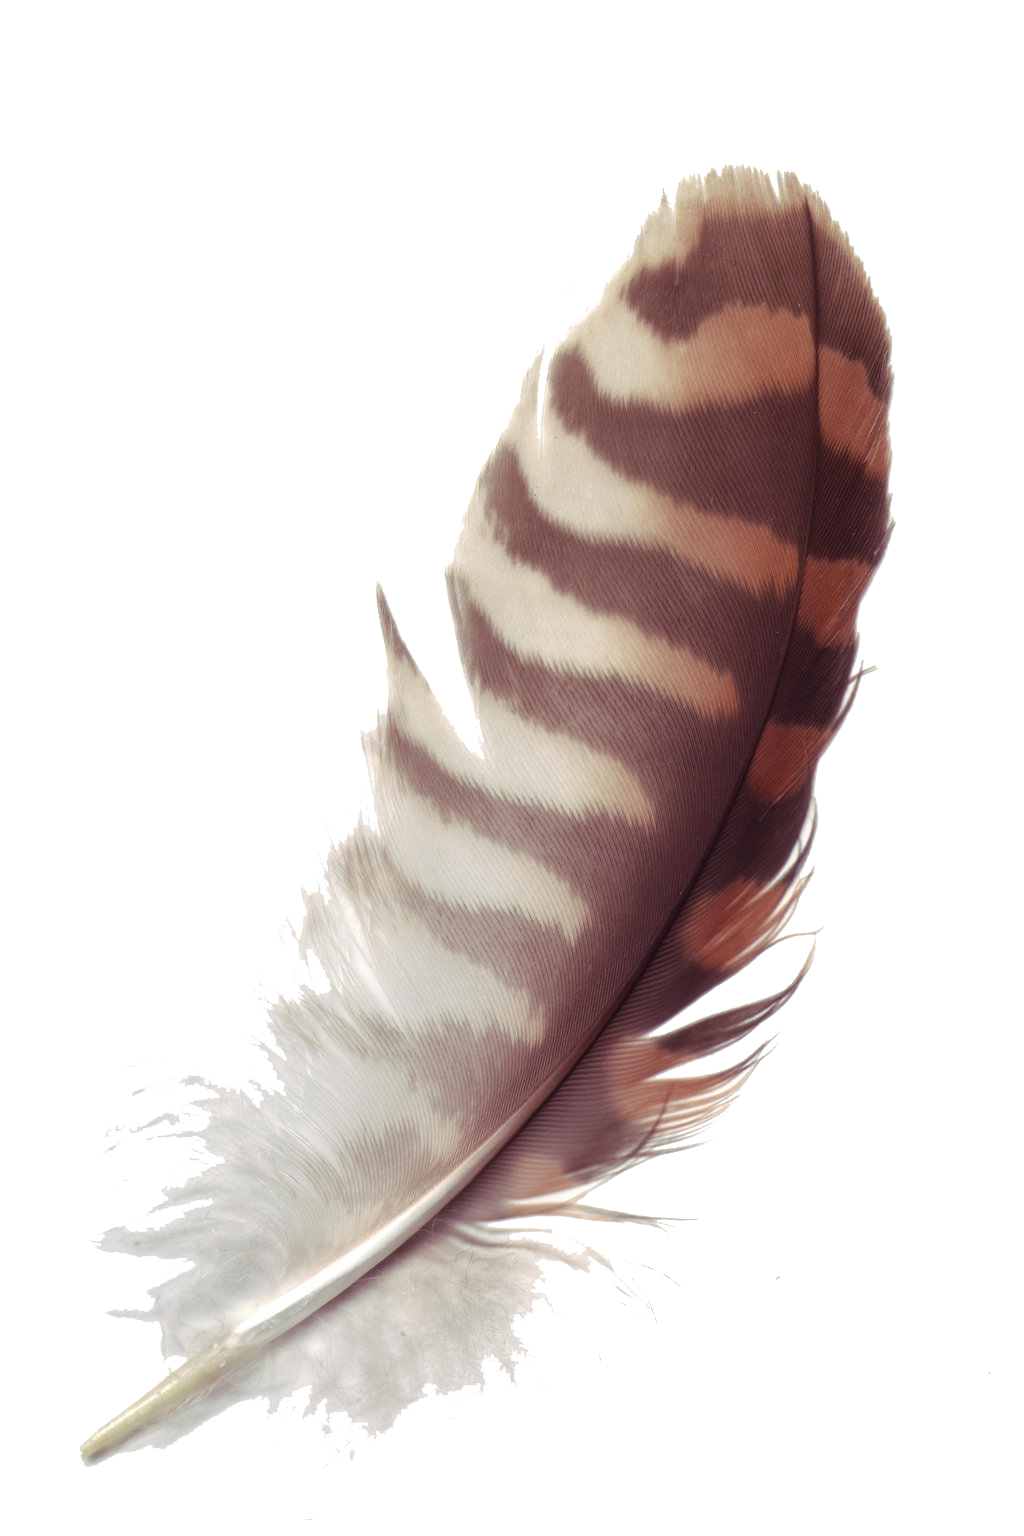 ภาพตัดปะขนนก PNG